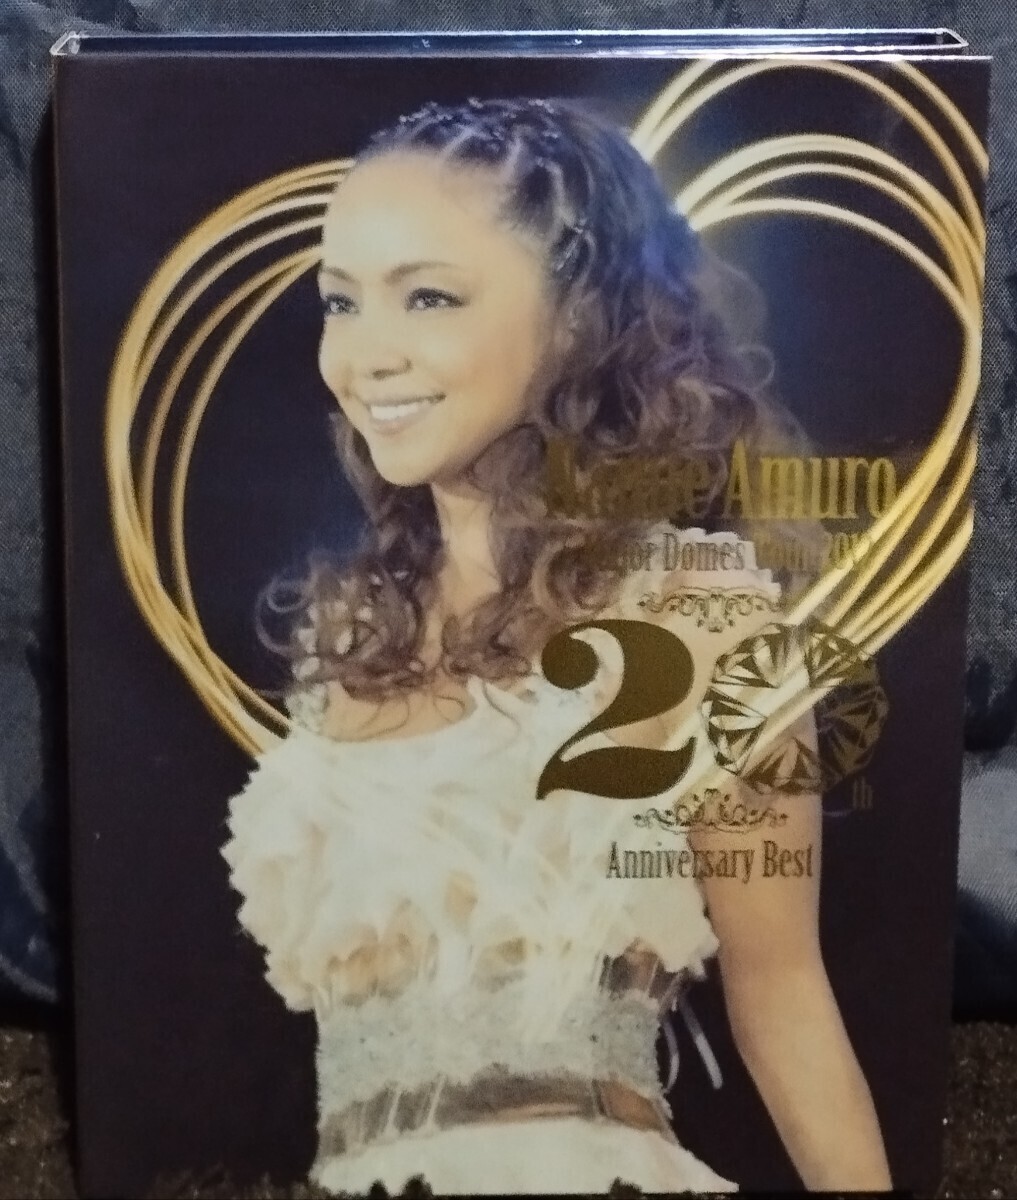 安室奈美恵 (豪華盤)DVD+2CD/Namie Amuro 5 Major Domes Tour 2012 20th Anniversary Bestの画像1